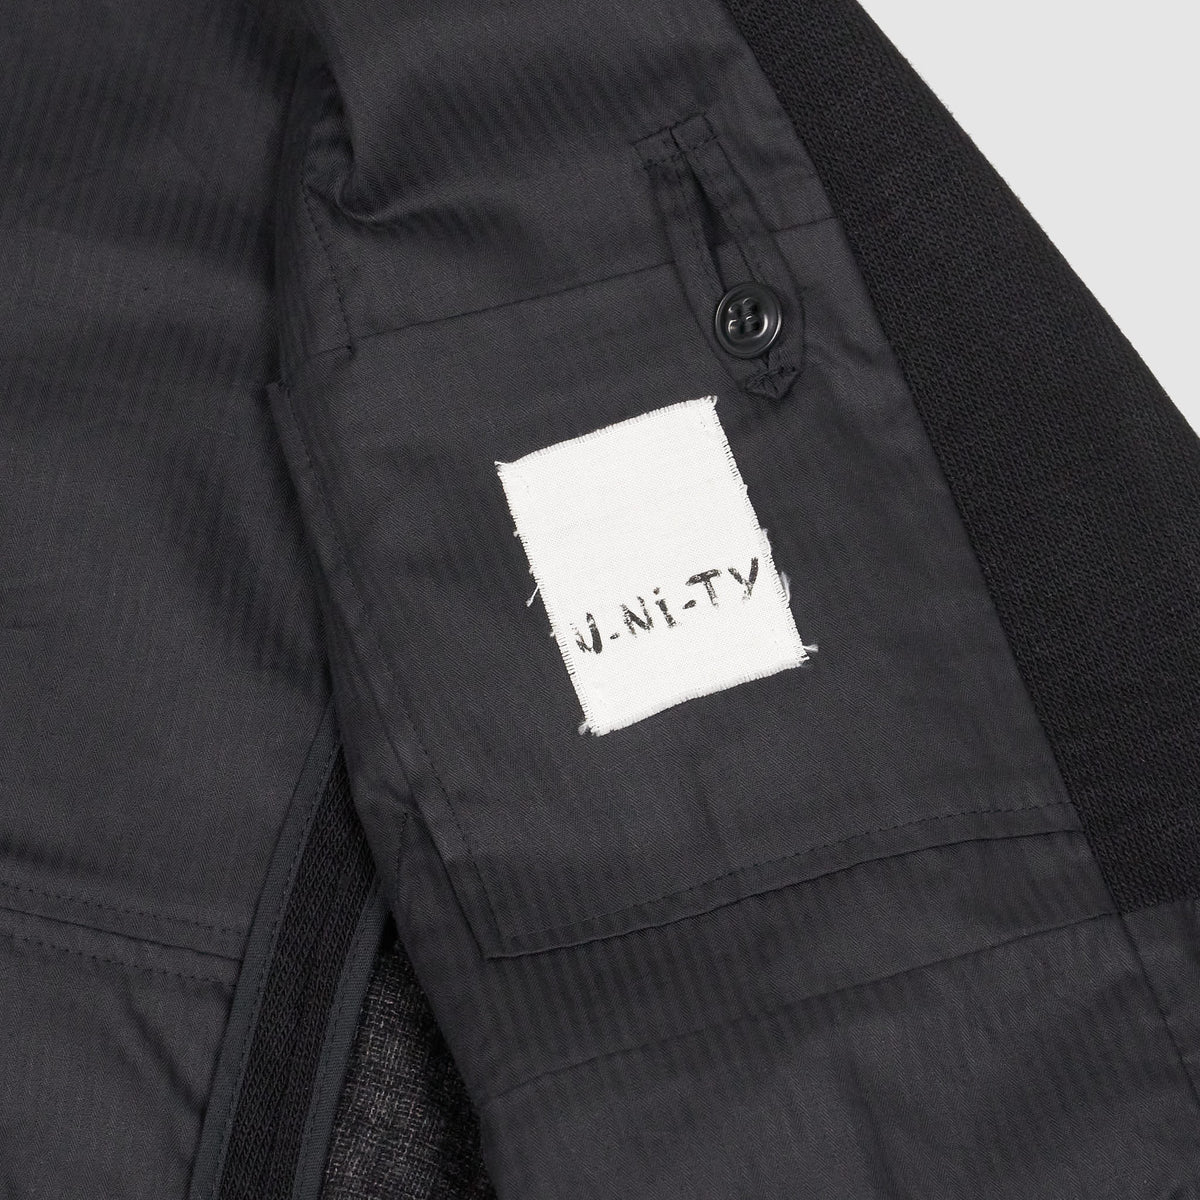 U-Ni-Ty Cotton Blend Knit Jersey Blazer